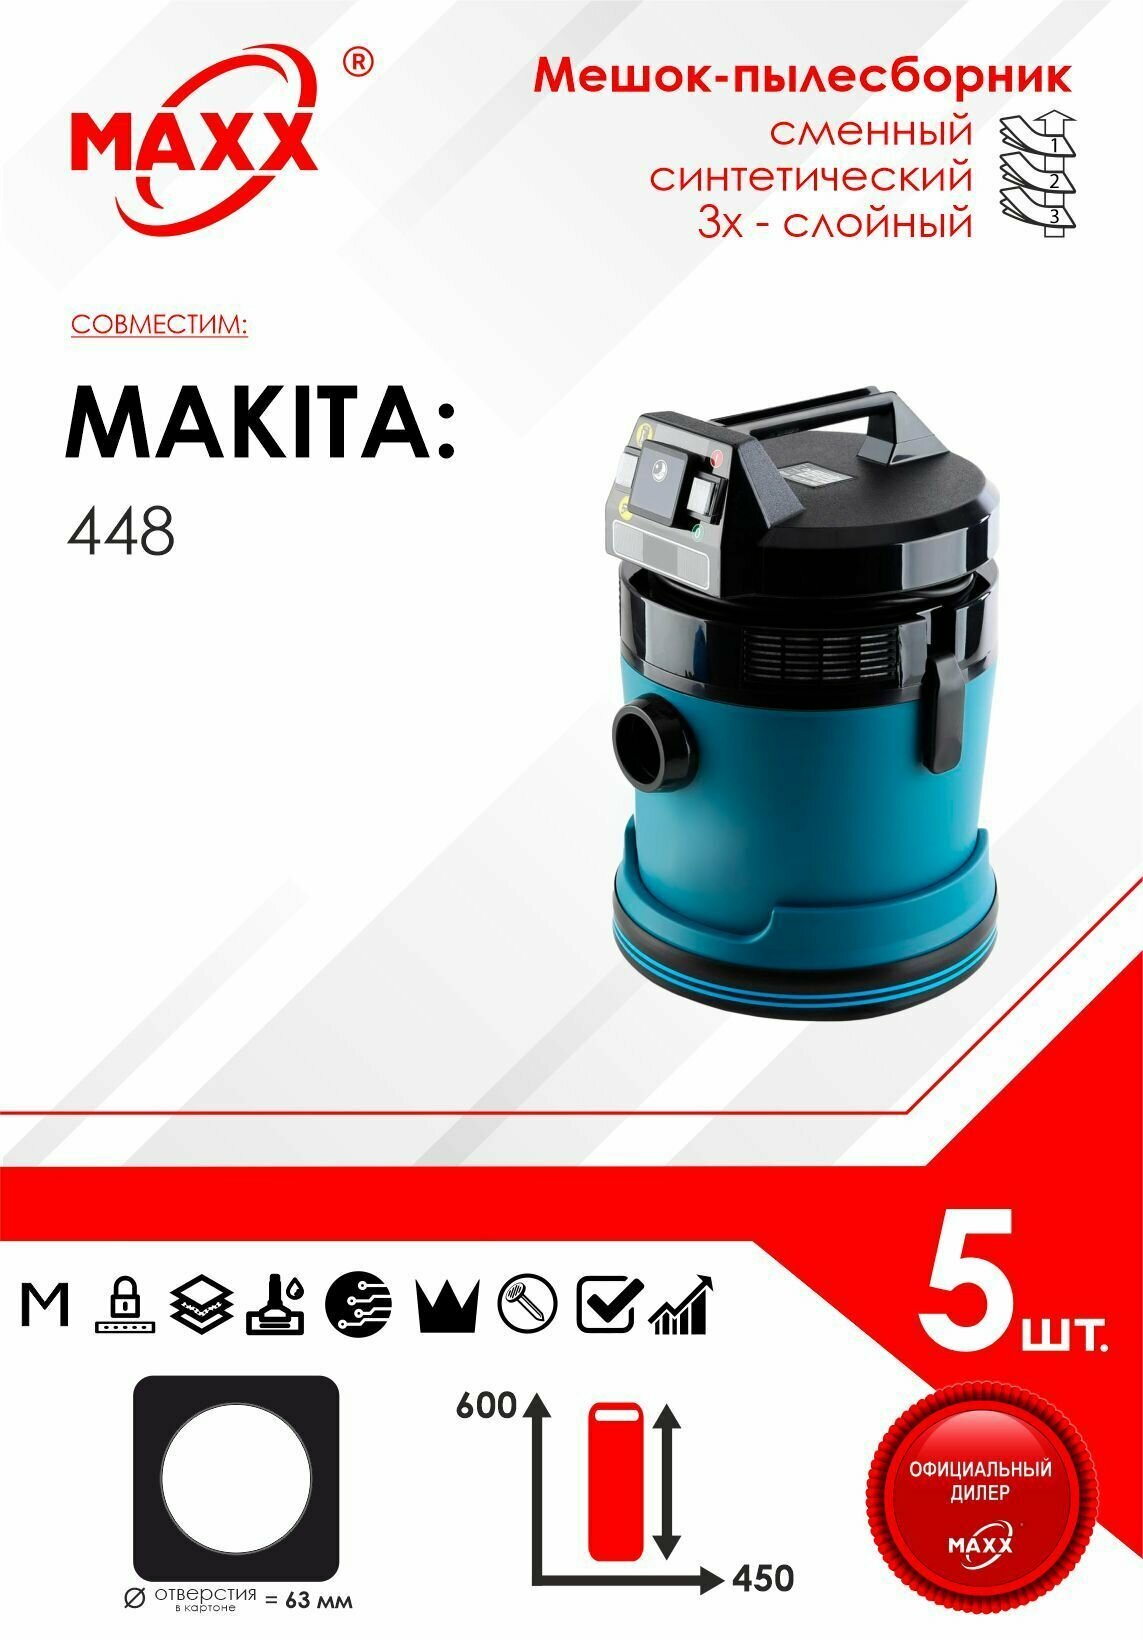 Мешок - пылесборник 5 шт. для пылесоса Makita 448